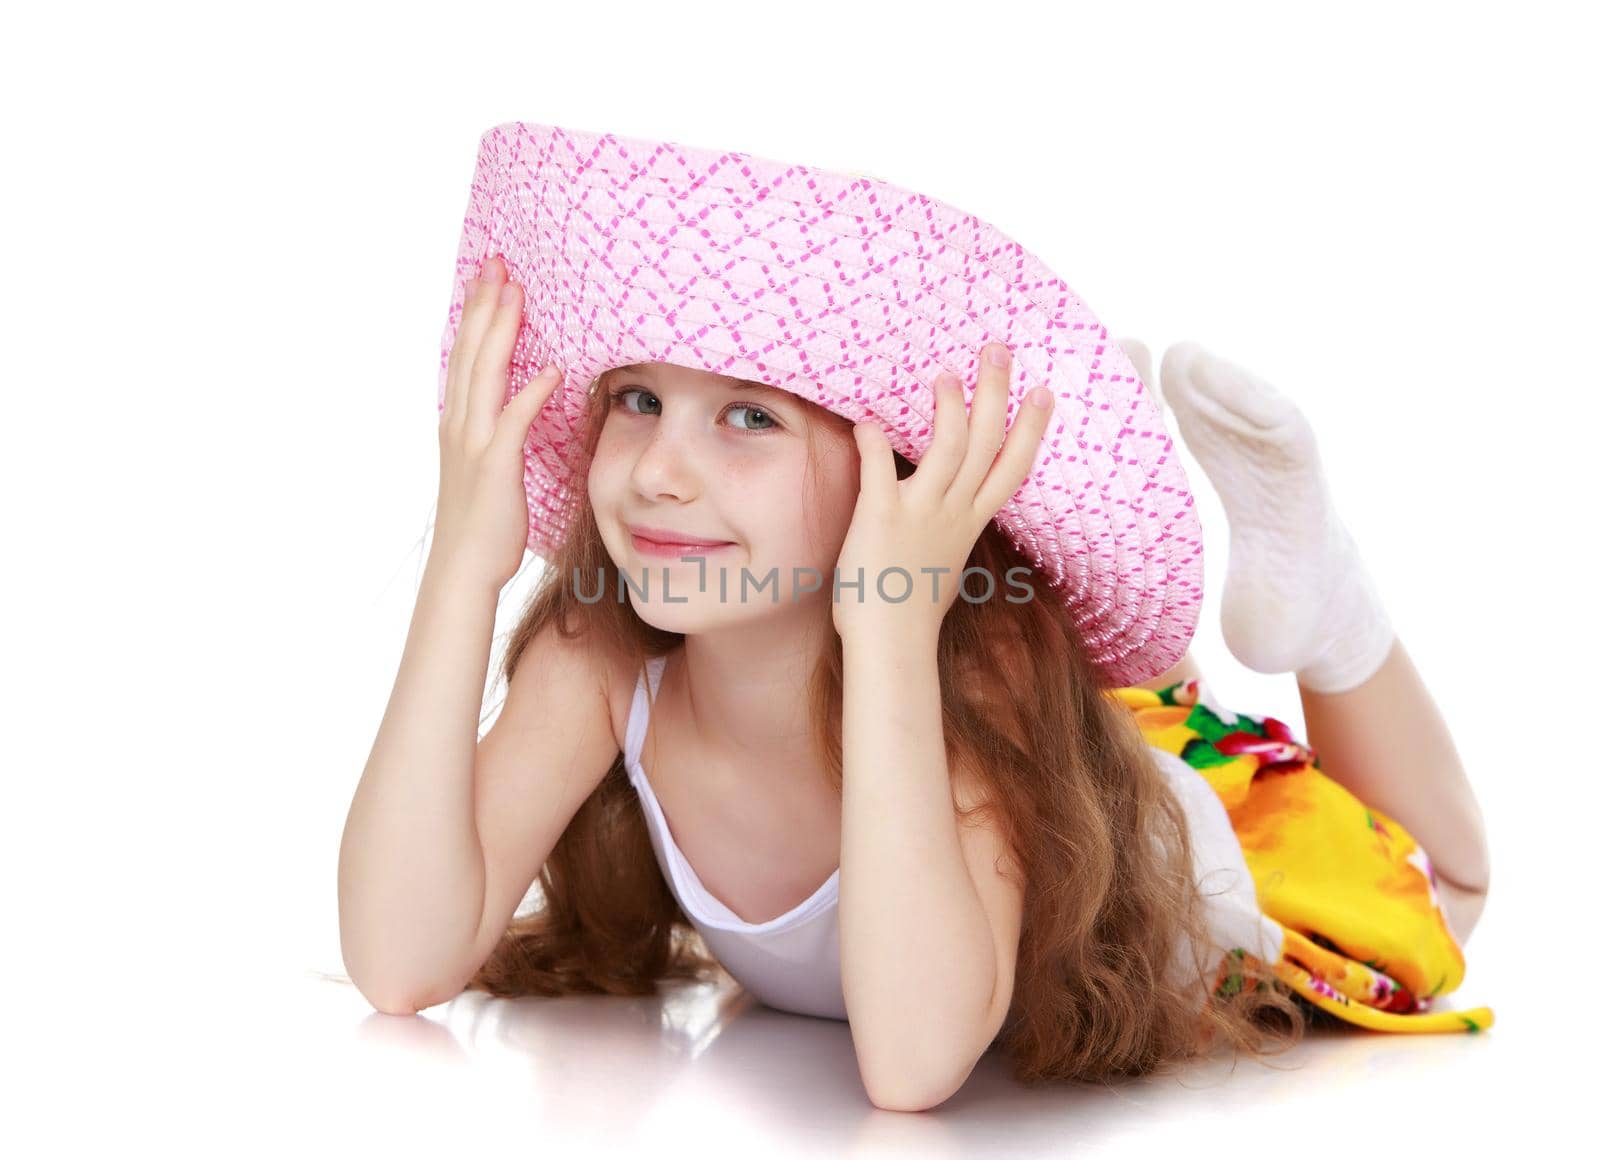 The girl in the pink hat by kolesnikov_studio